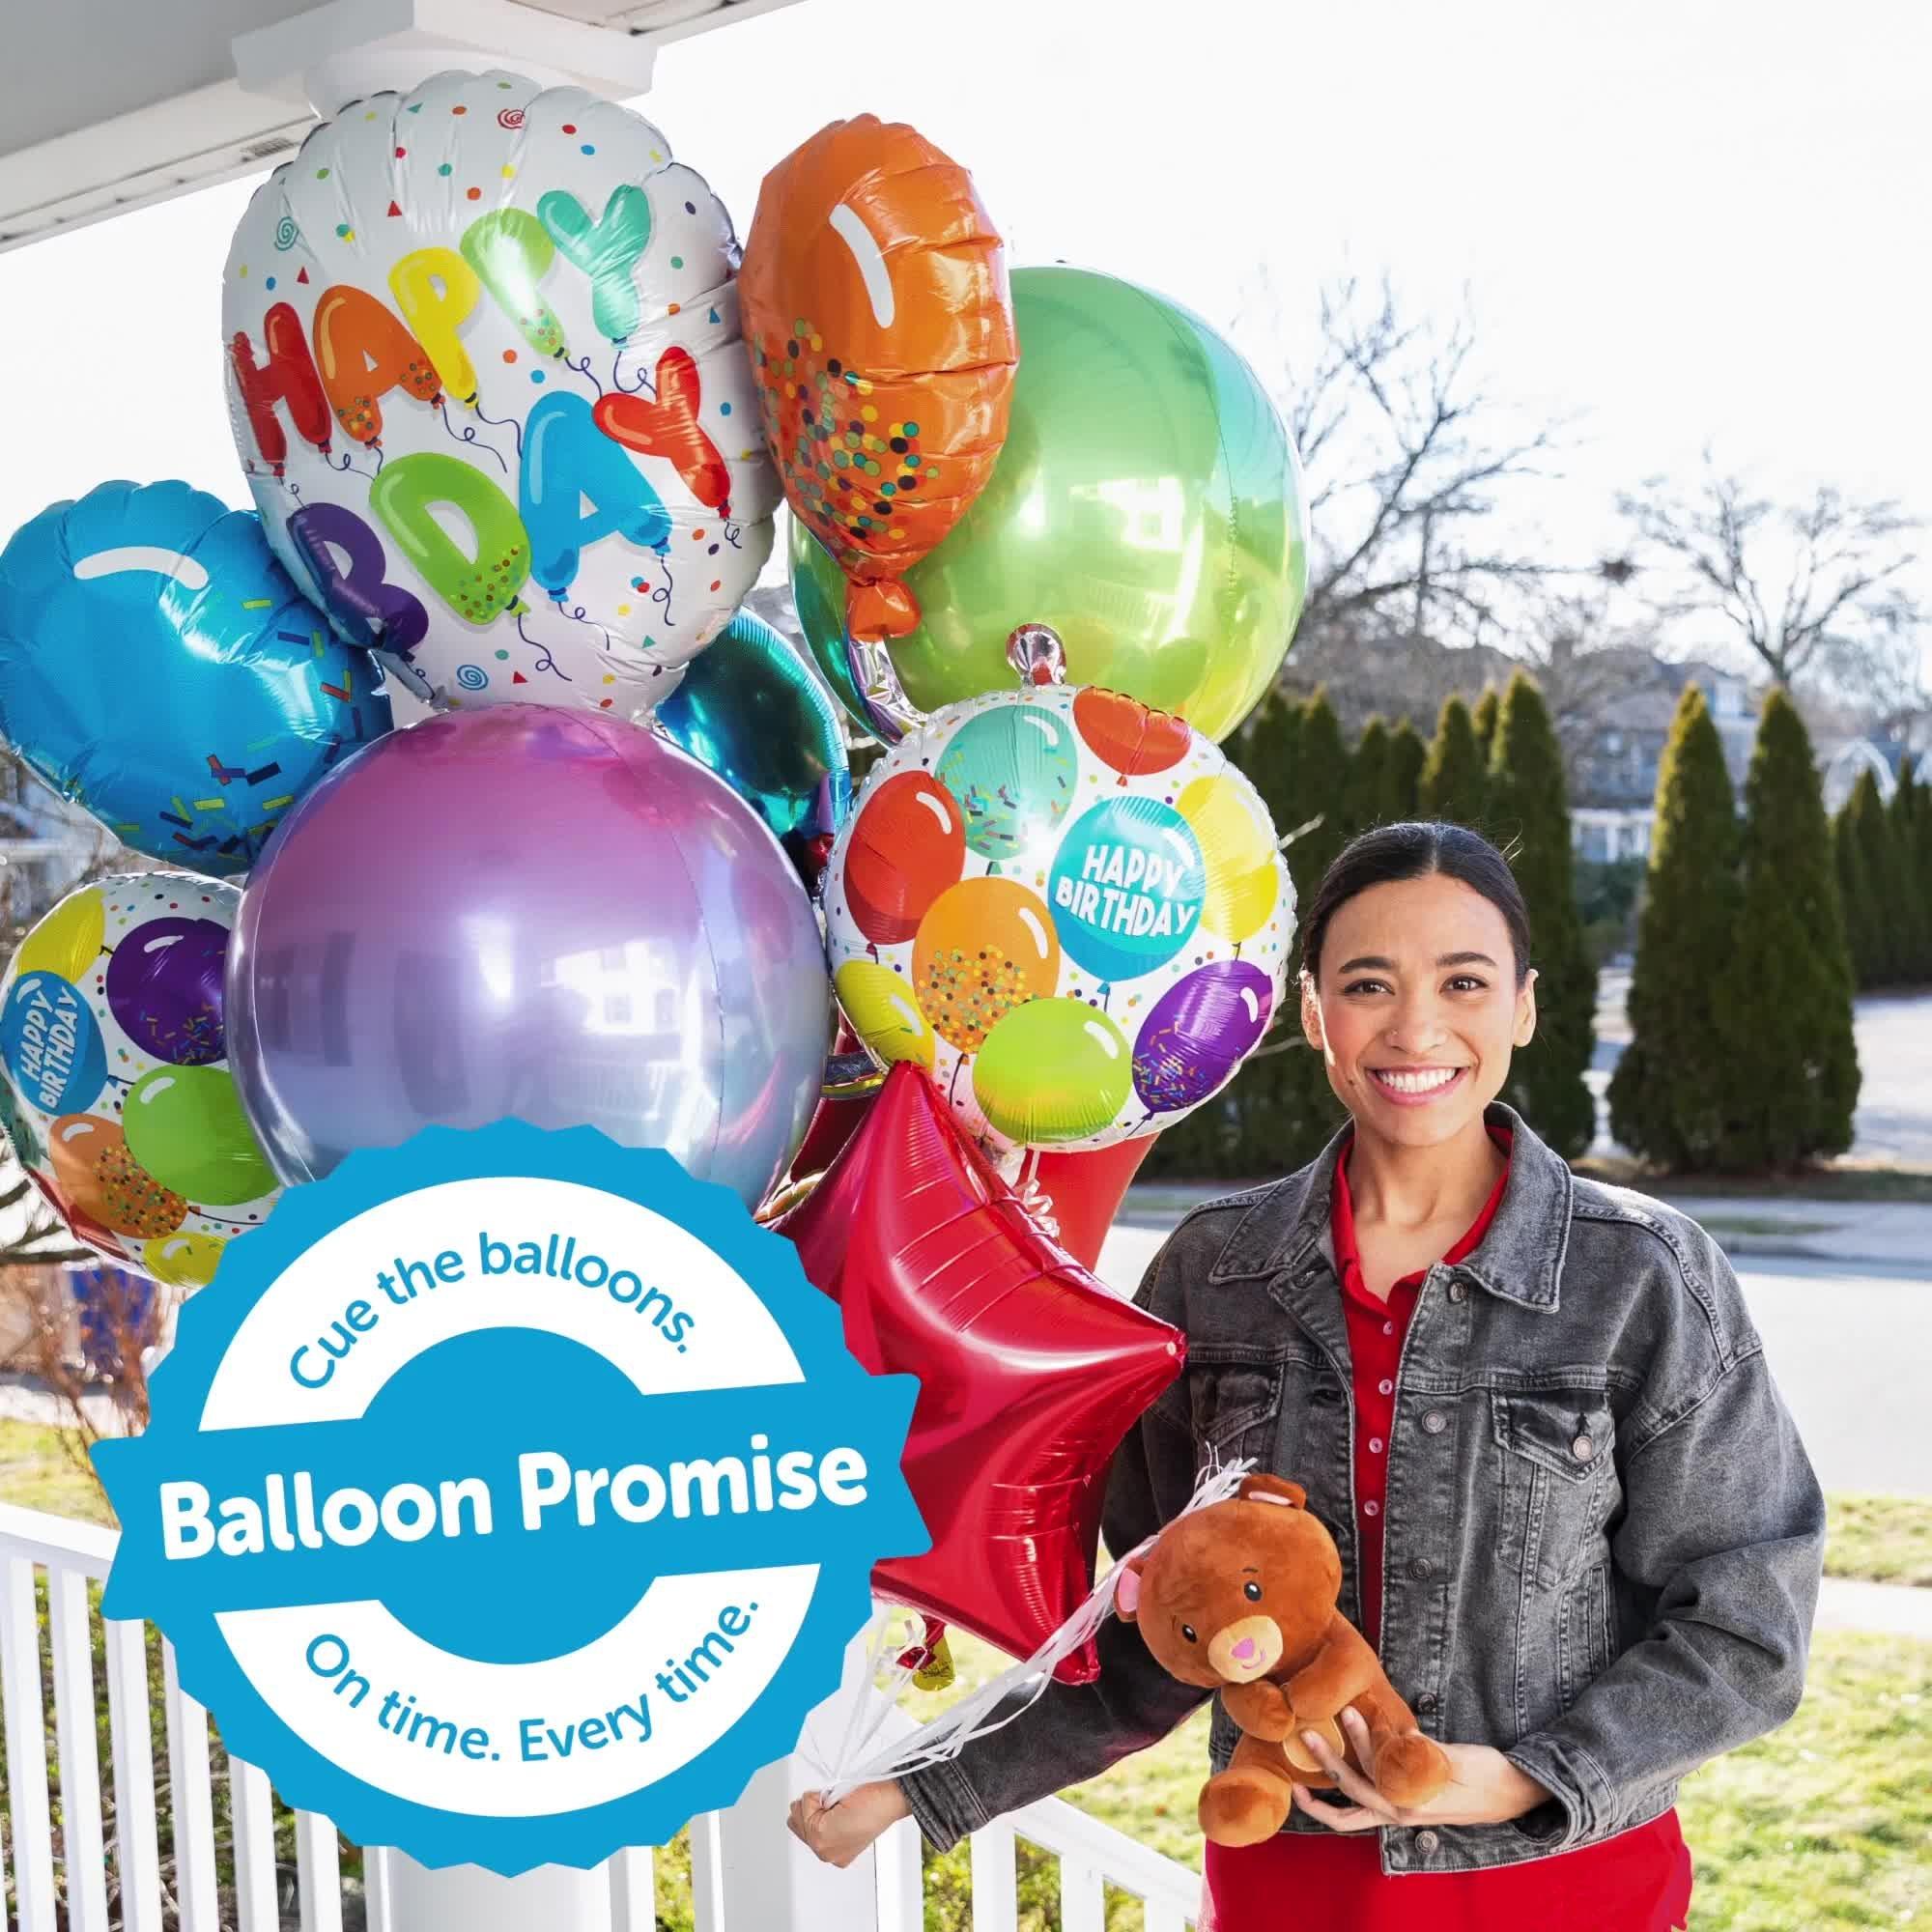 Congrats Grad Graduation Foil Balloon Bouquet, 5pc - Follow Your Dreams